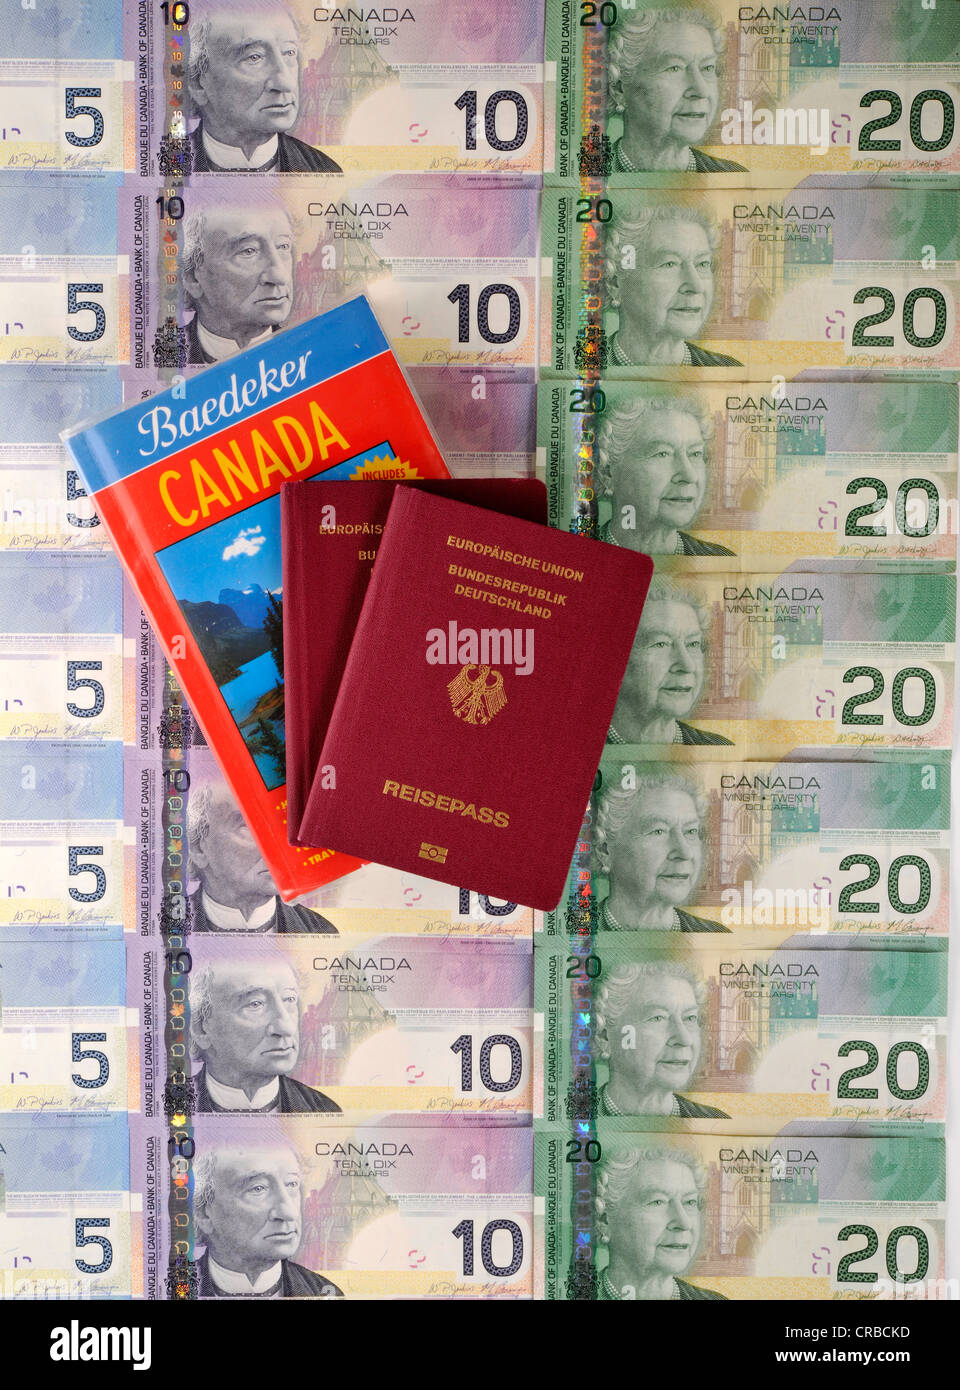 Reisepass der Bundesrepublik Deutschland, Reiseführer für Kanada, verschiedene kanadische Dollar-Banknoten Stockfoto